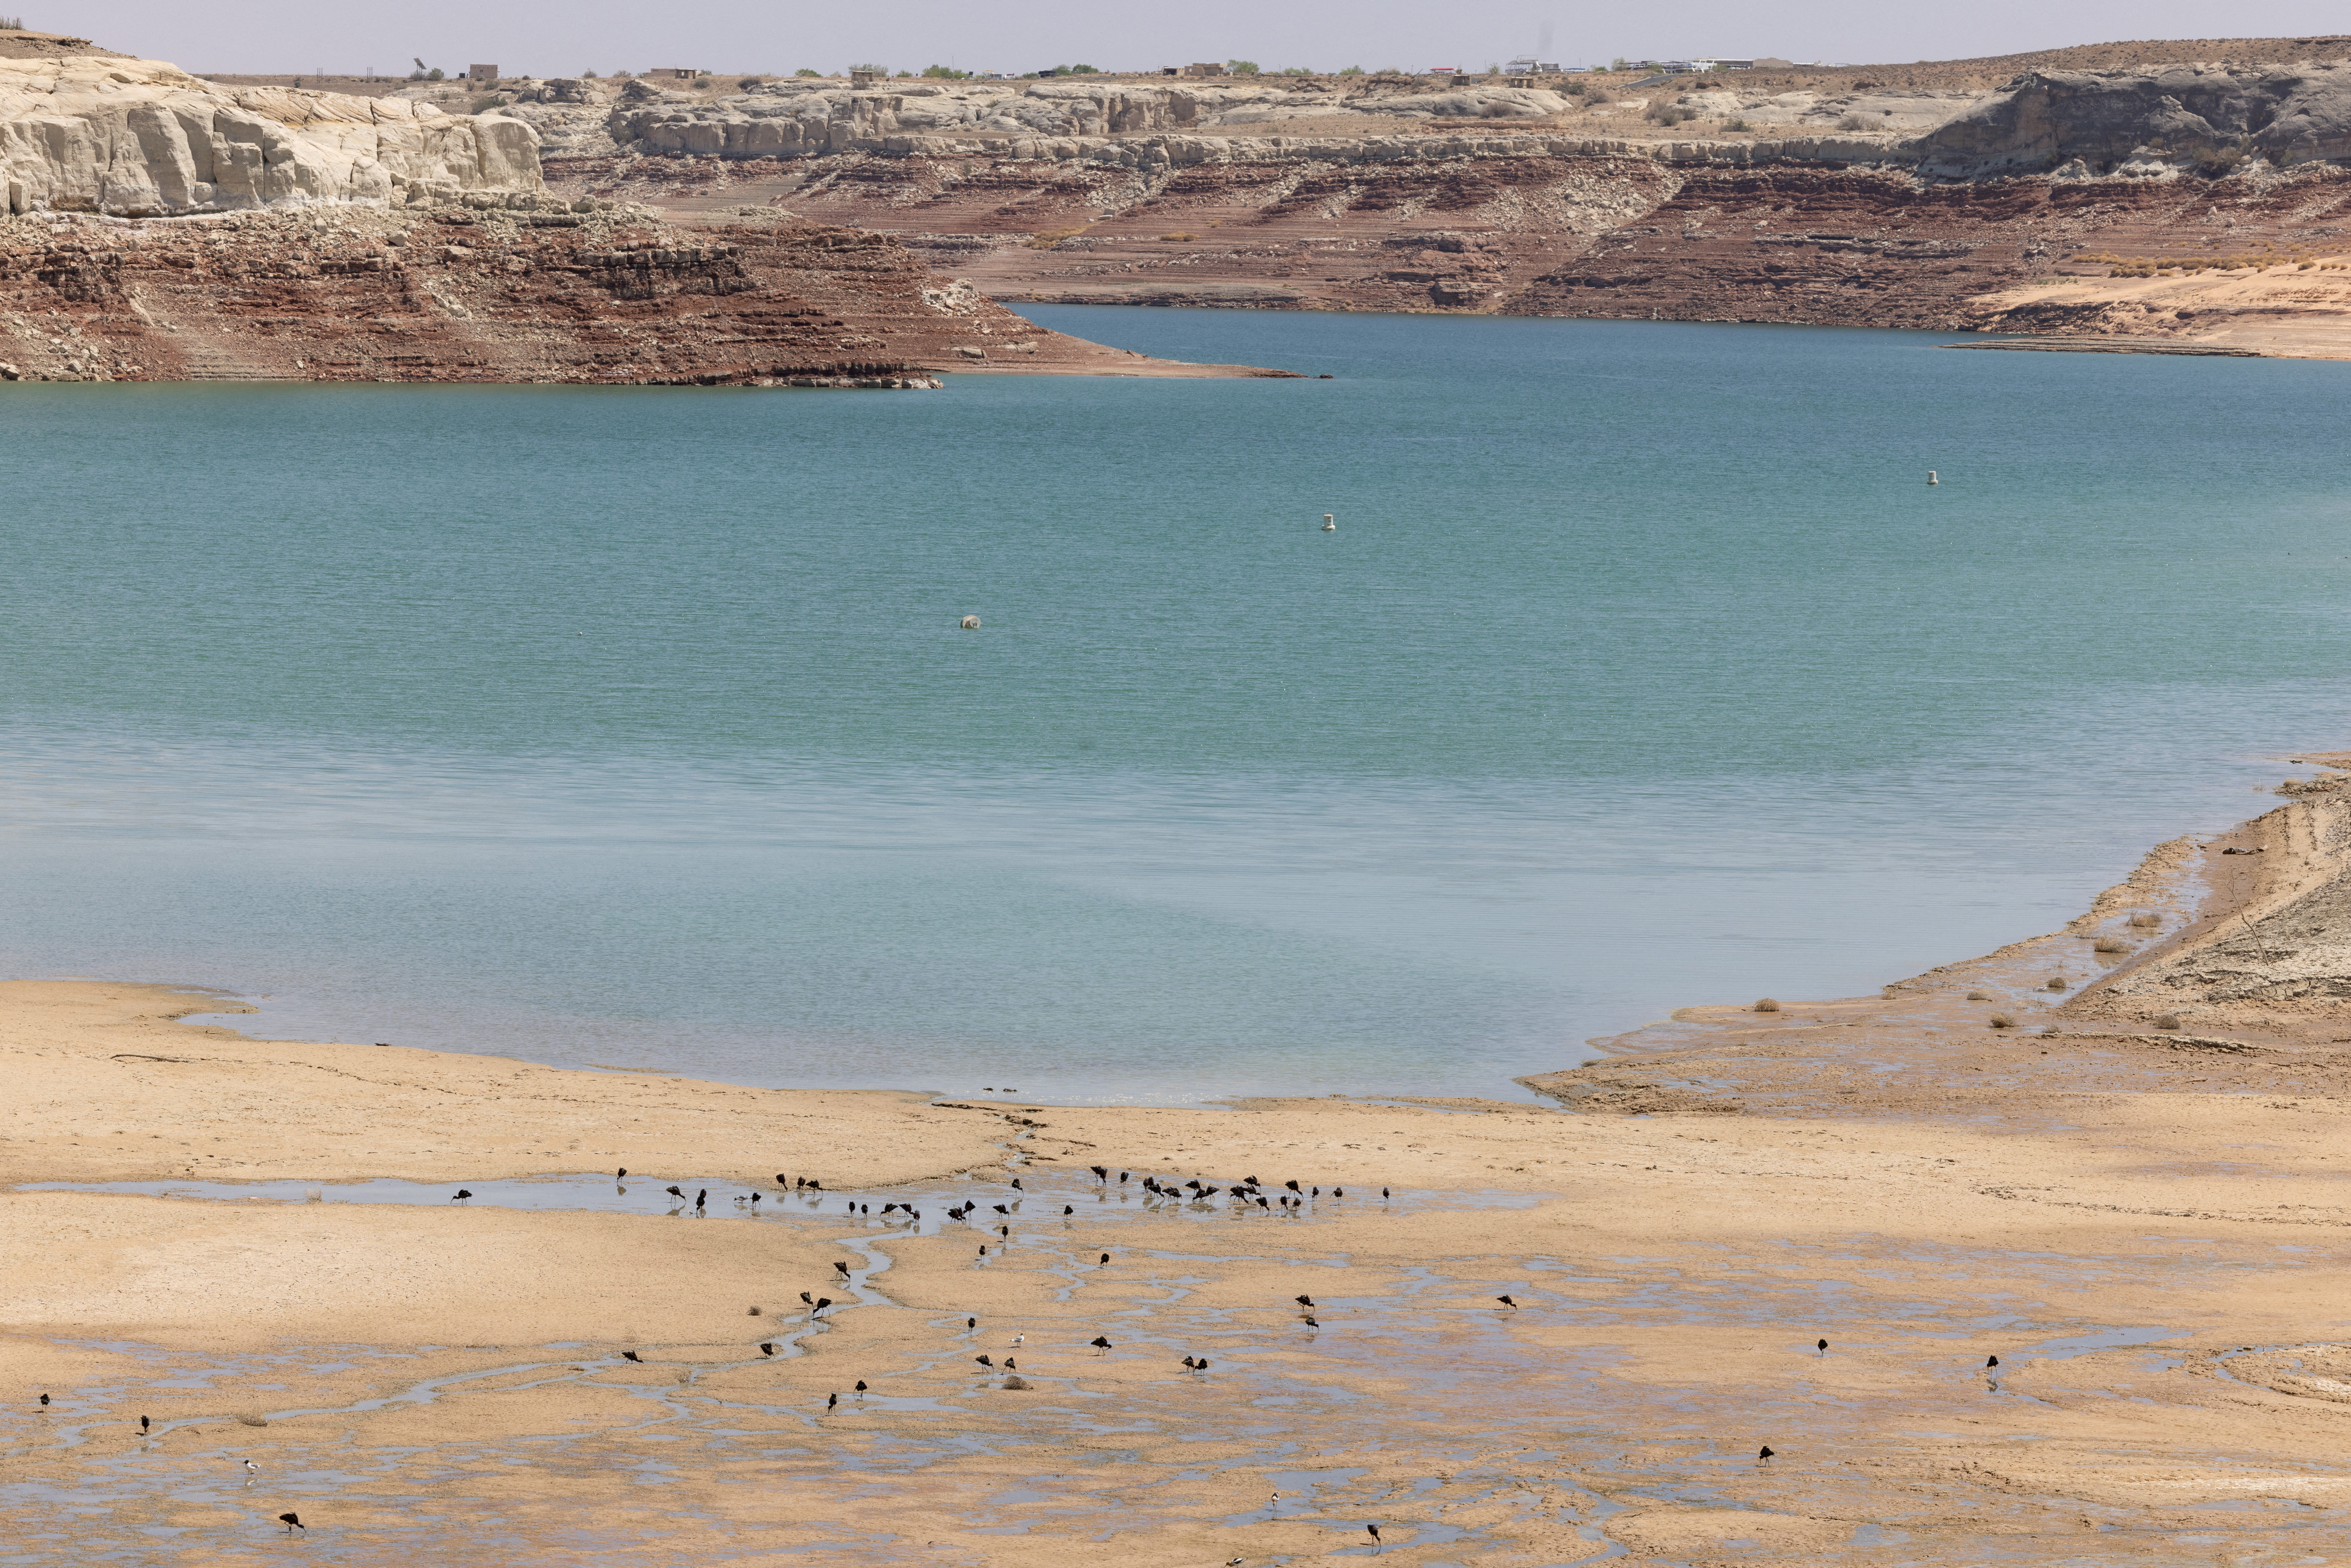 Pájaros beben de las aguas que retroceden cerca de Lone Rock Beach, una popular zona de recreo que solía estar bajo el agua, en el lago Powell. El segundo embalse más grande del país ha caído a los niveles más bajos registrados desde que se creó el lago al represar el río Colorado en la década de 1960. Foto tomada en Big Water, Utah, Estados Unidos, el 20 de abril de 2022 (REUTERS/Caitlin Ochs)